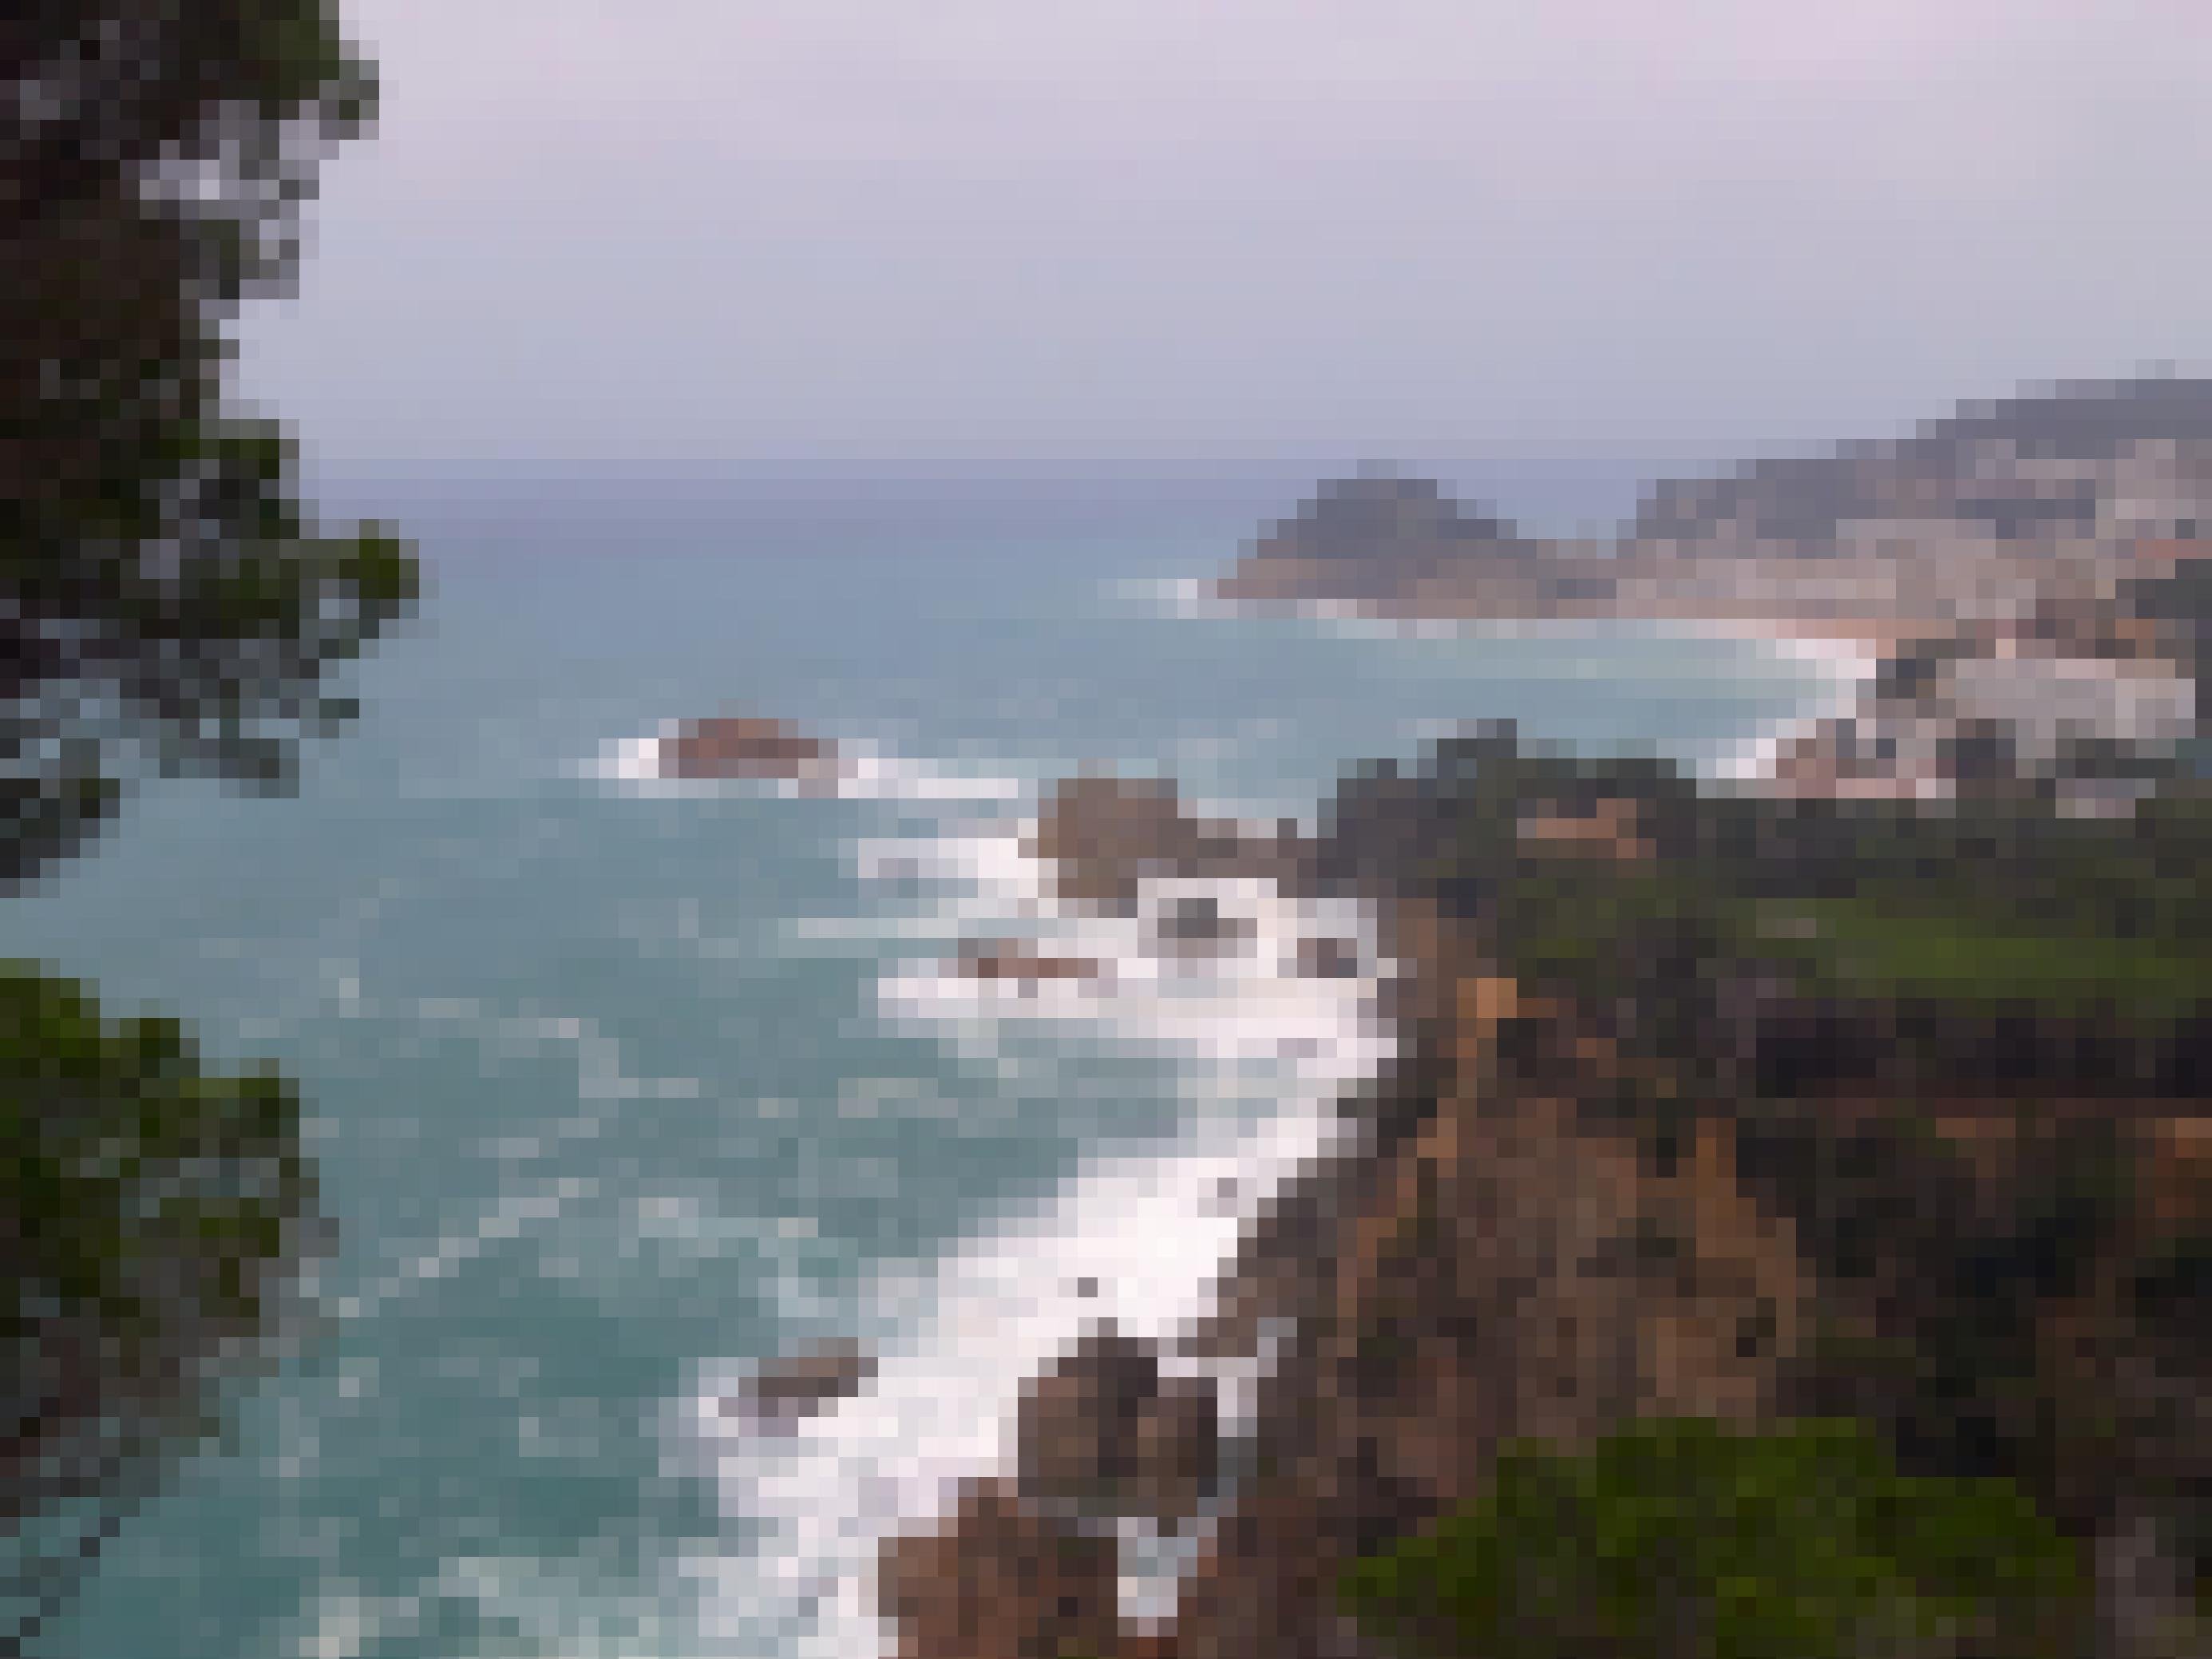 Tiefblick auf das schäumende Meer der Costa Brava, die an dieser Stelle vorgelagerte Klippen besitzt.